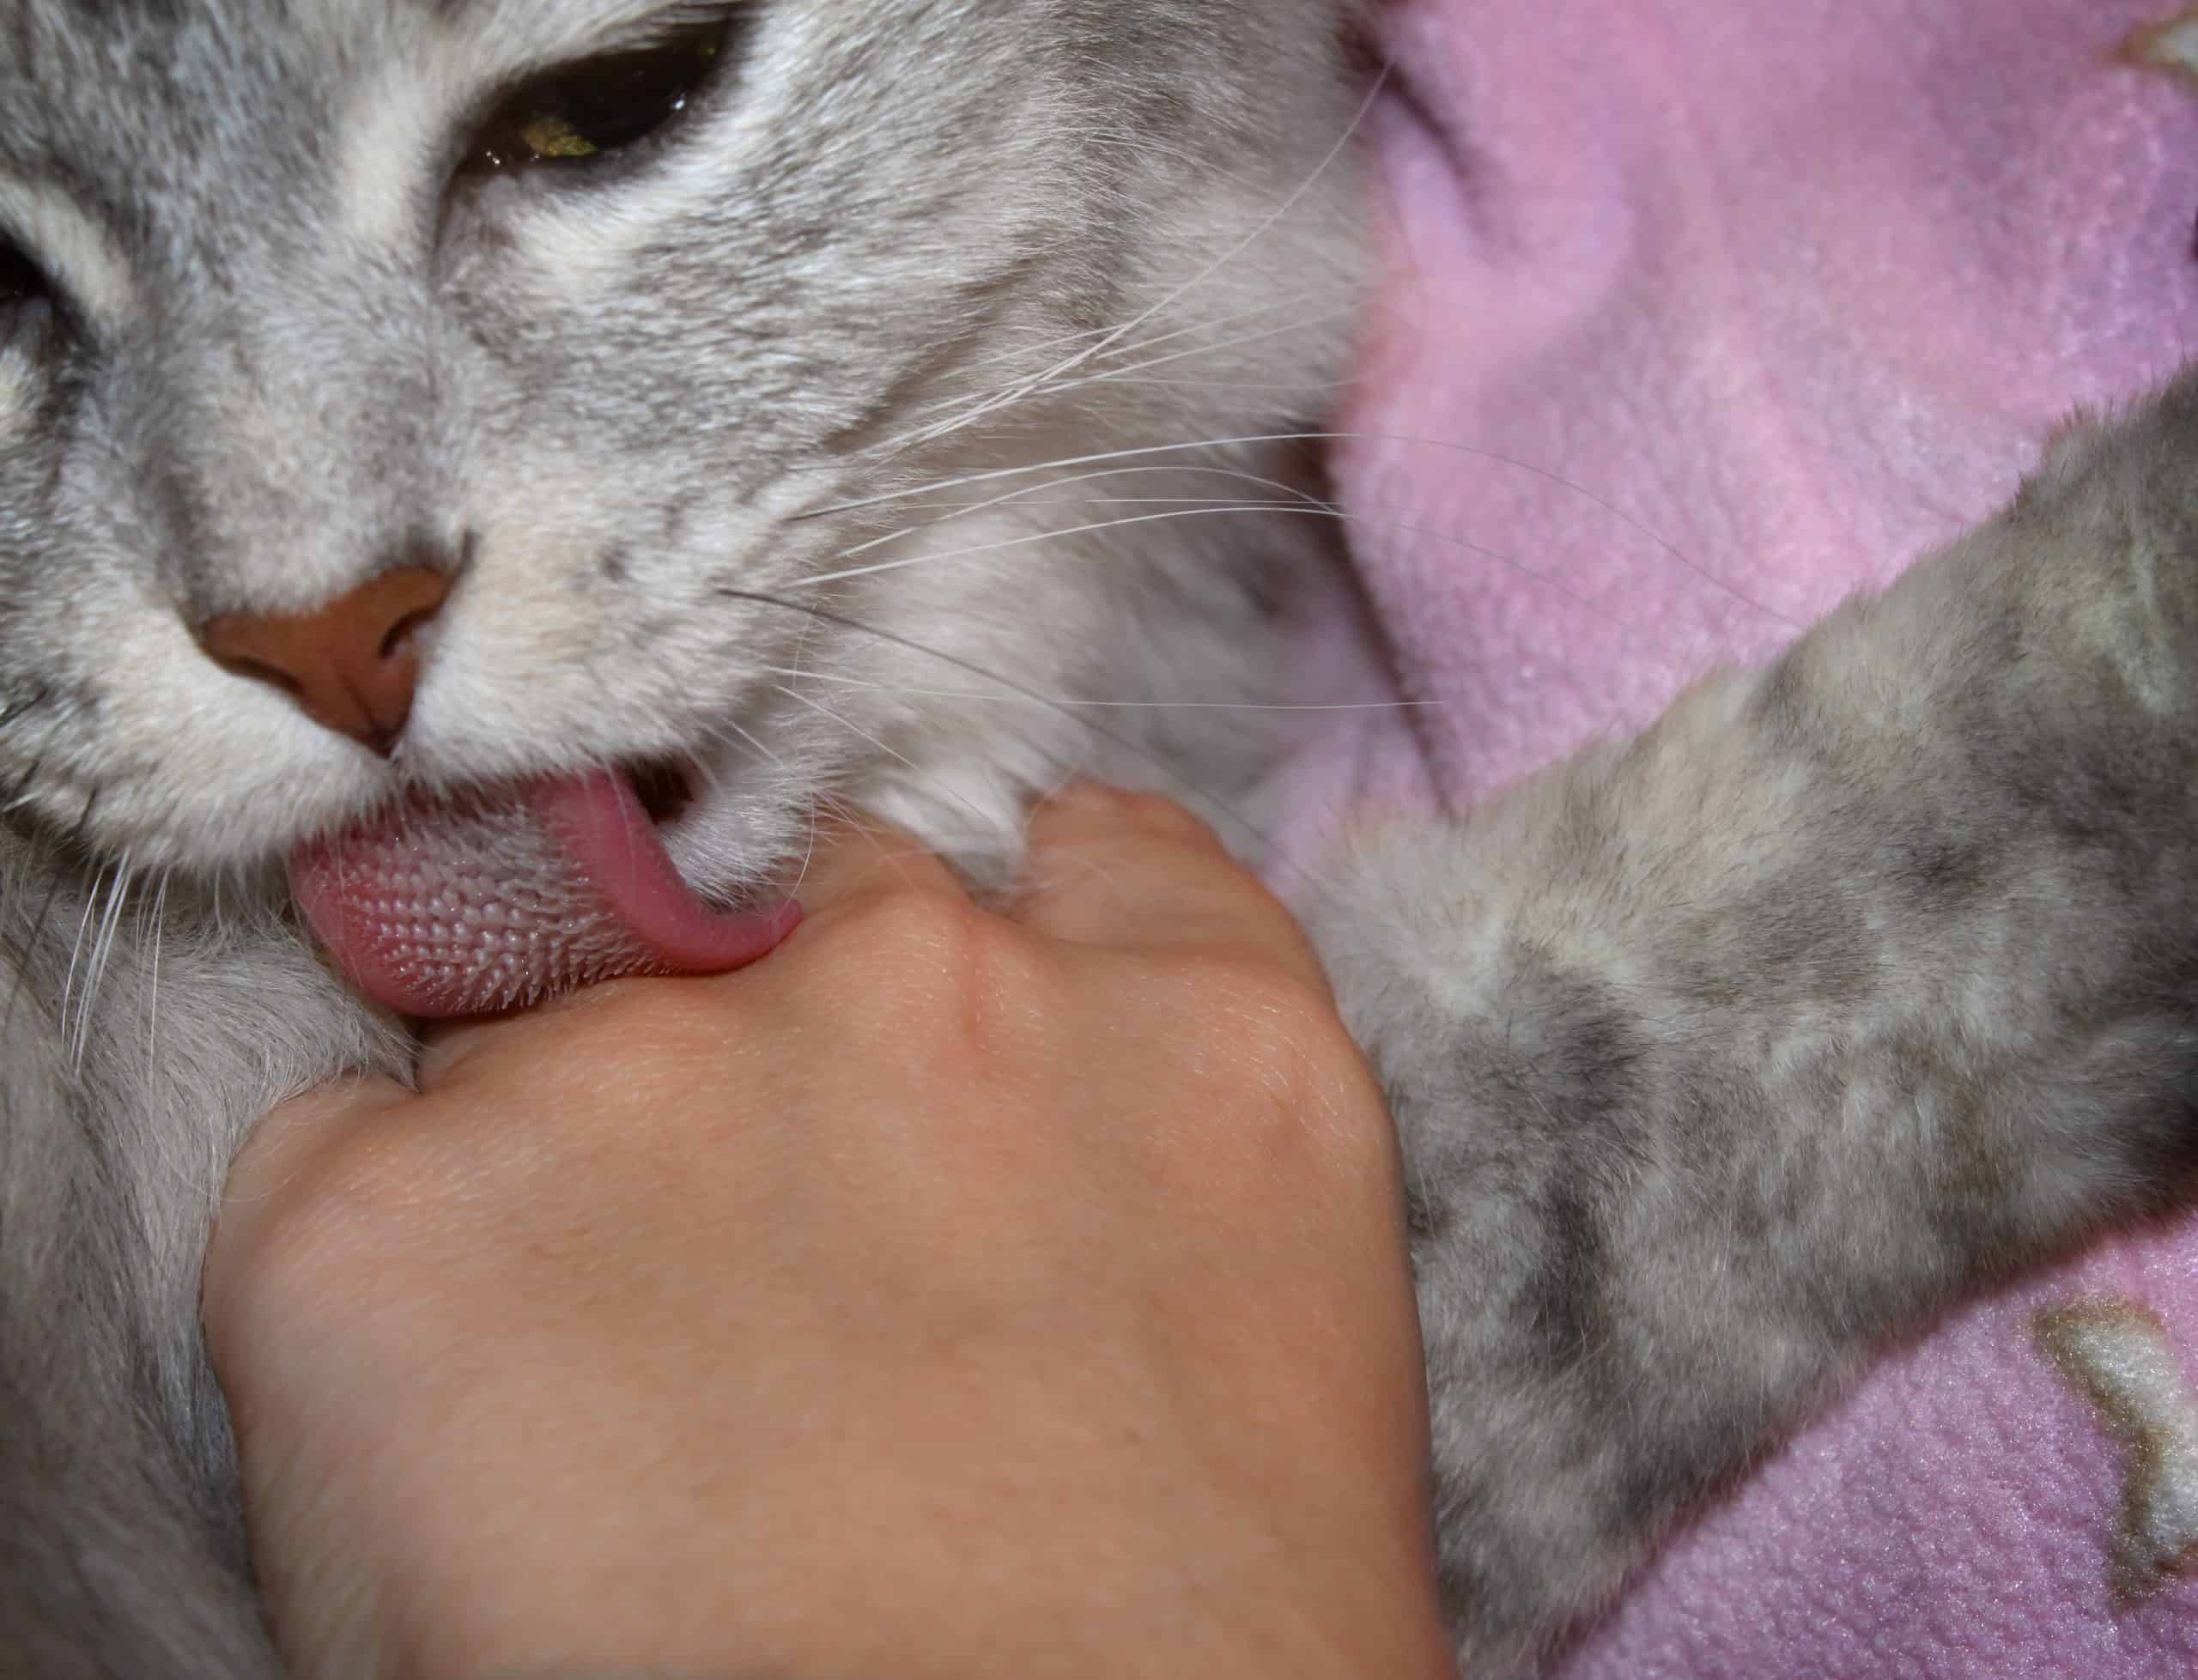 Cat licking Hand